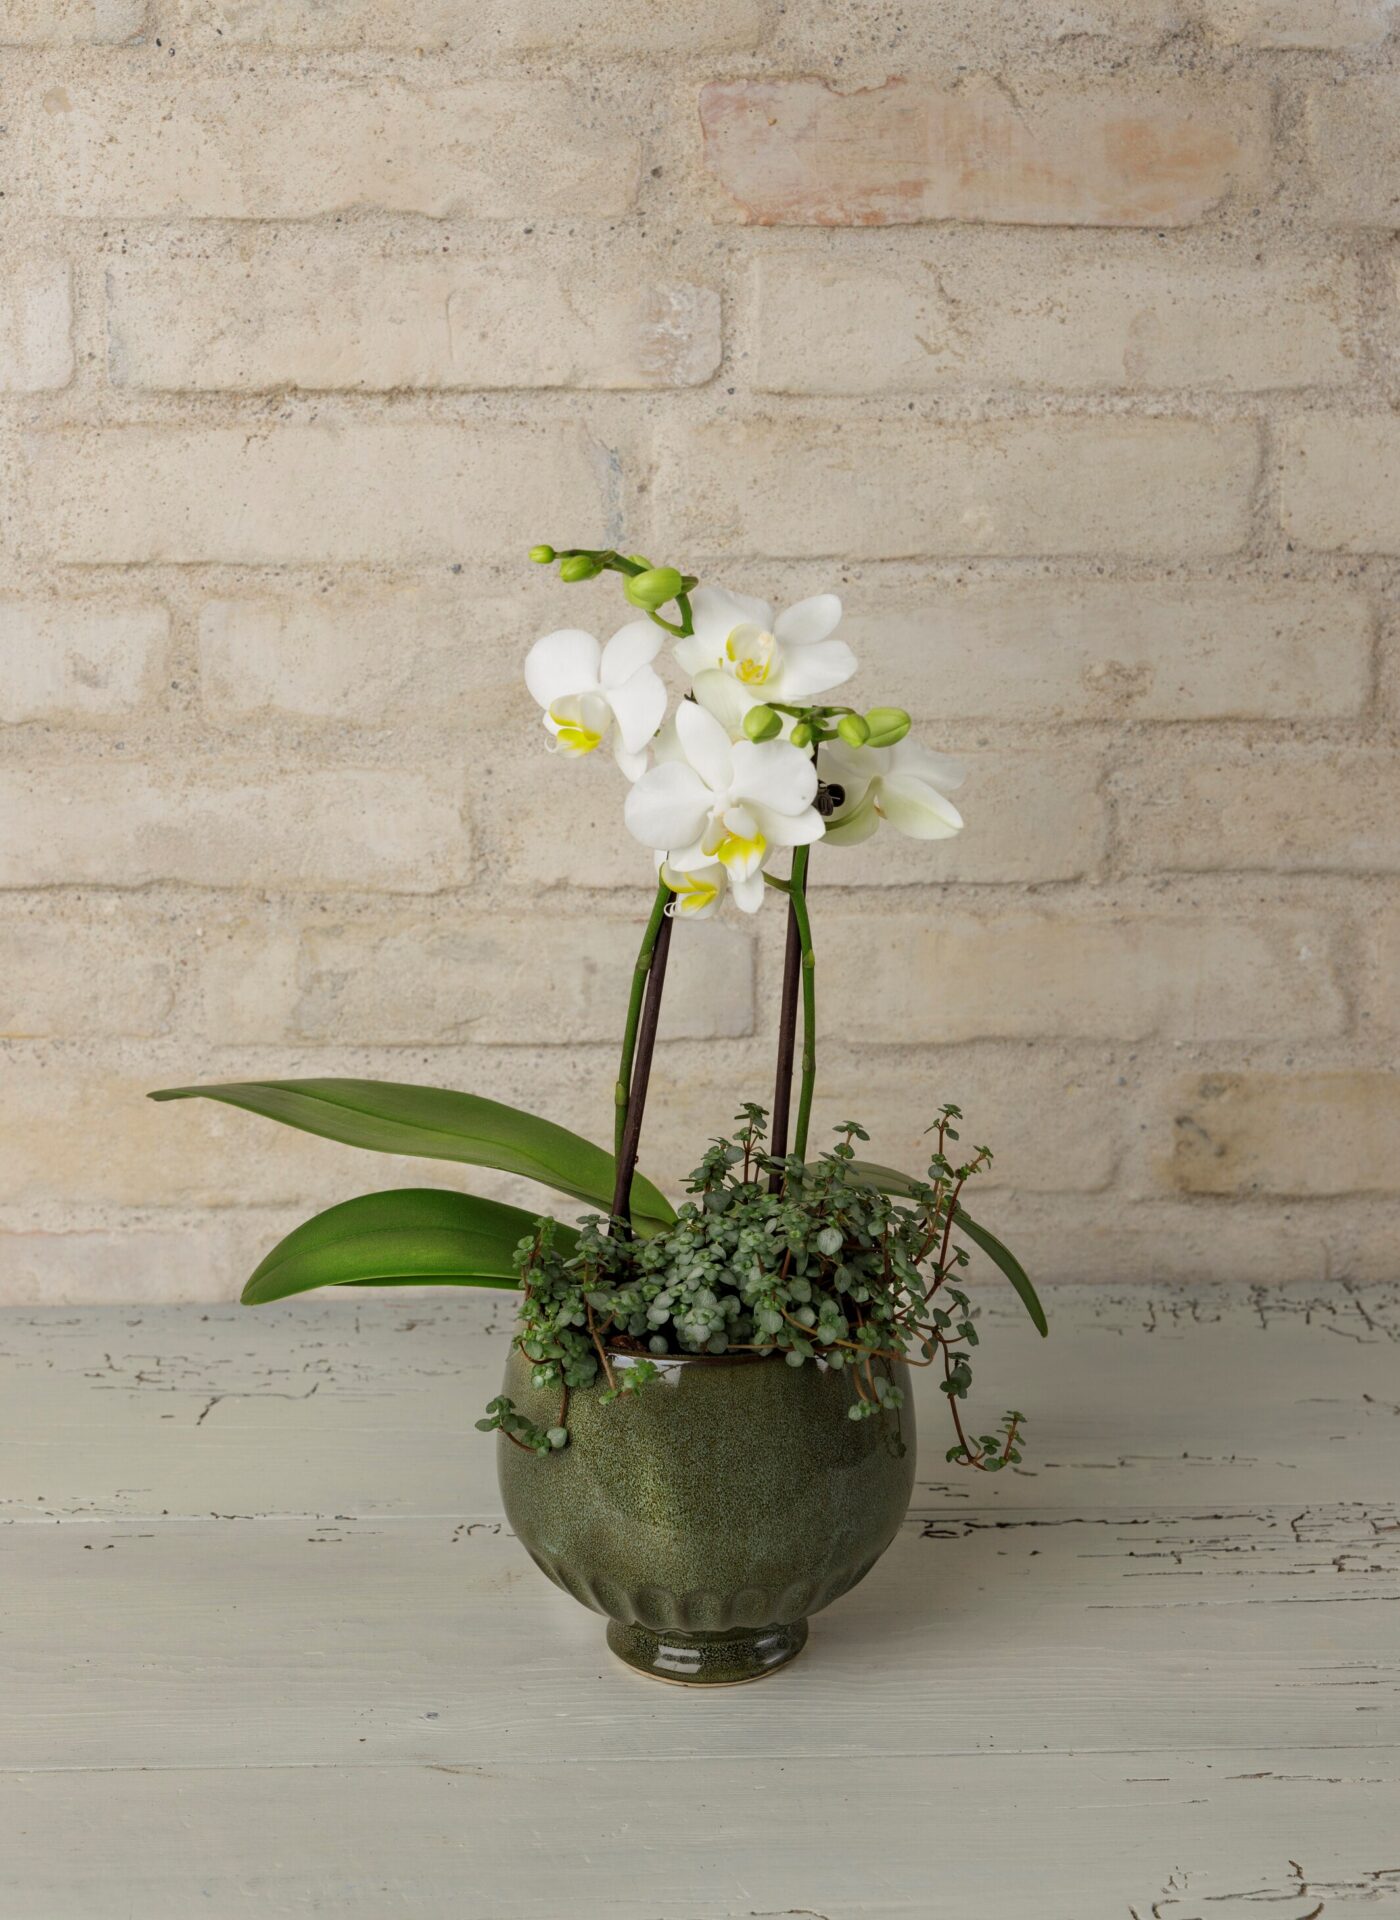 Orkide dekoration i grøn keramik